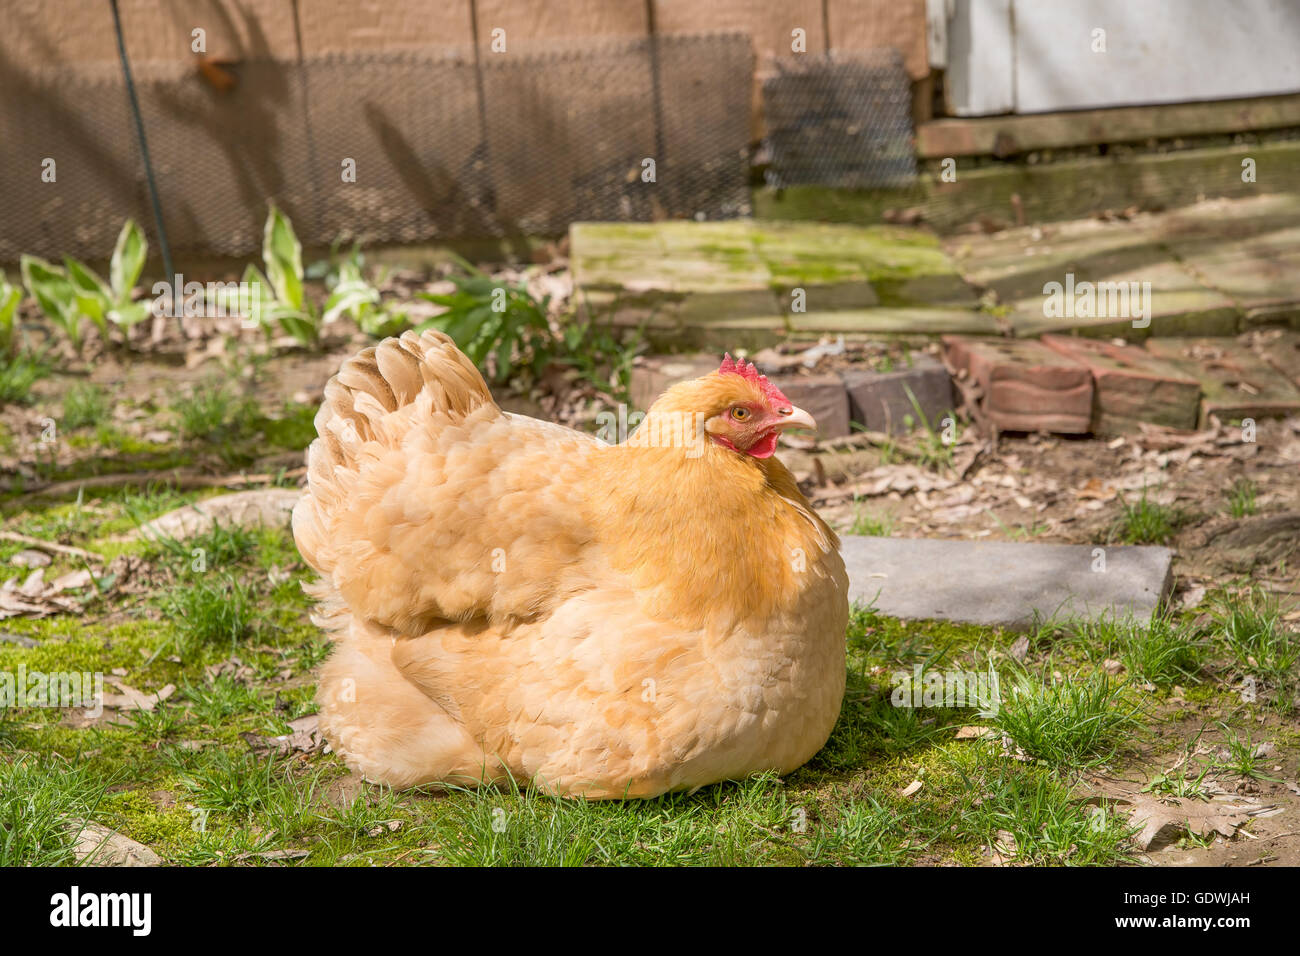 Une poule a ses plumes fluffed et c'est protéger sa couvée. La poule est assis sur l'herbe avec ses poussins cachés sous il Banque D'Images